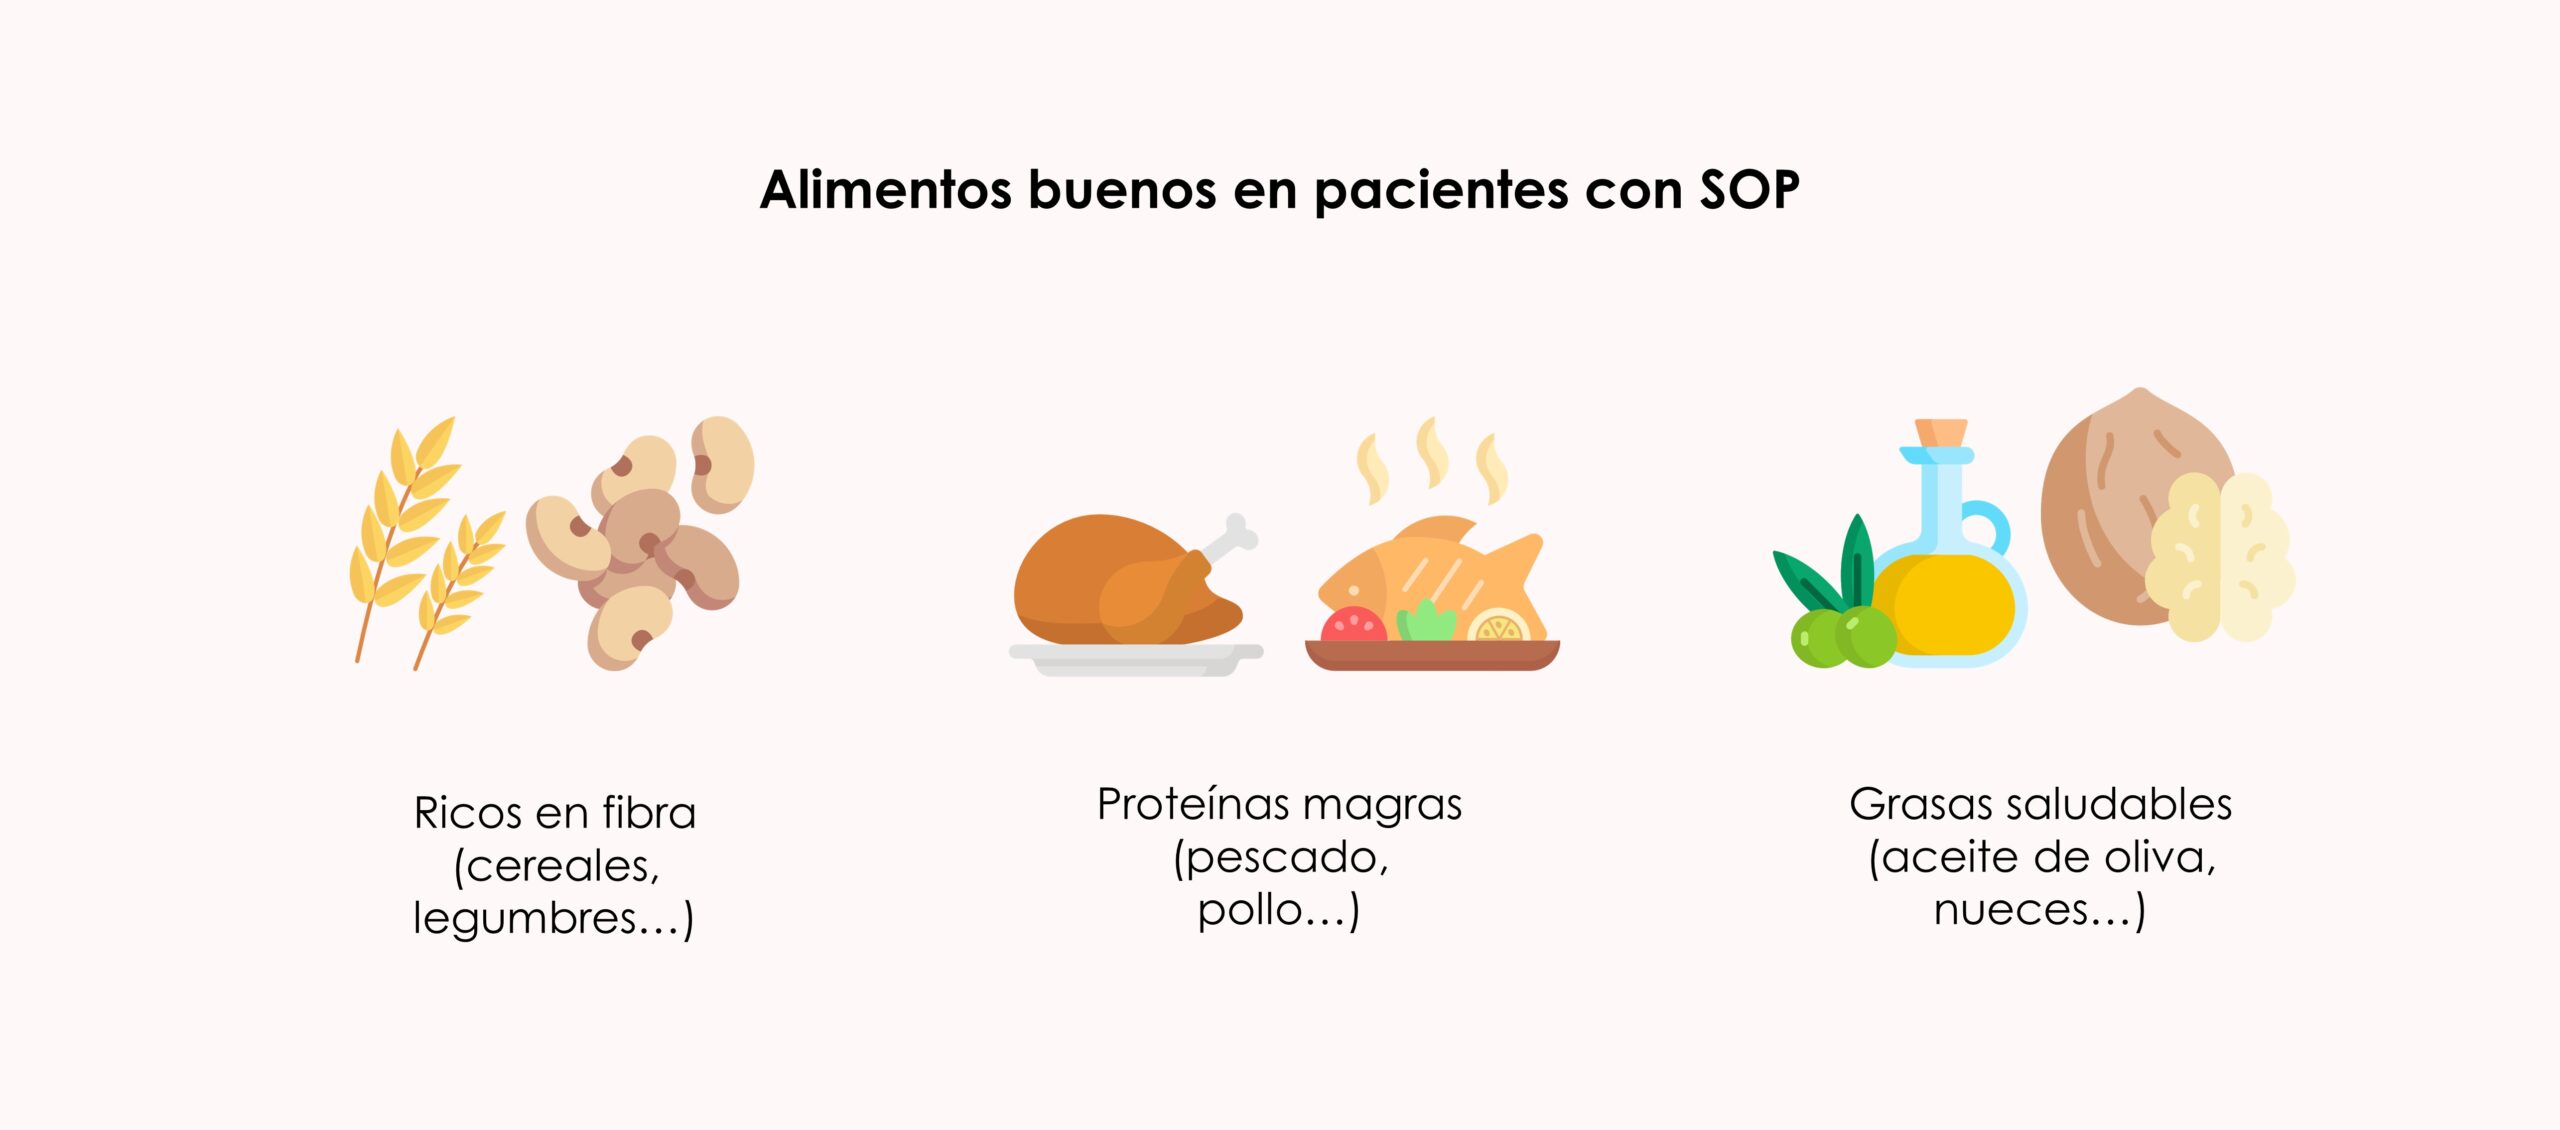 
Alimentos buenos en pacientes con SOP
